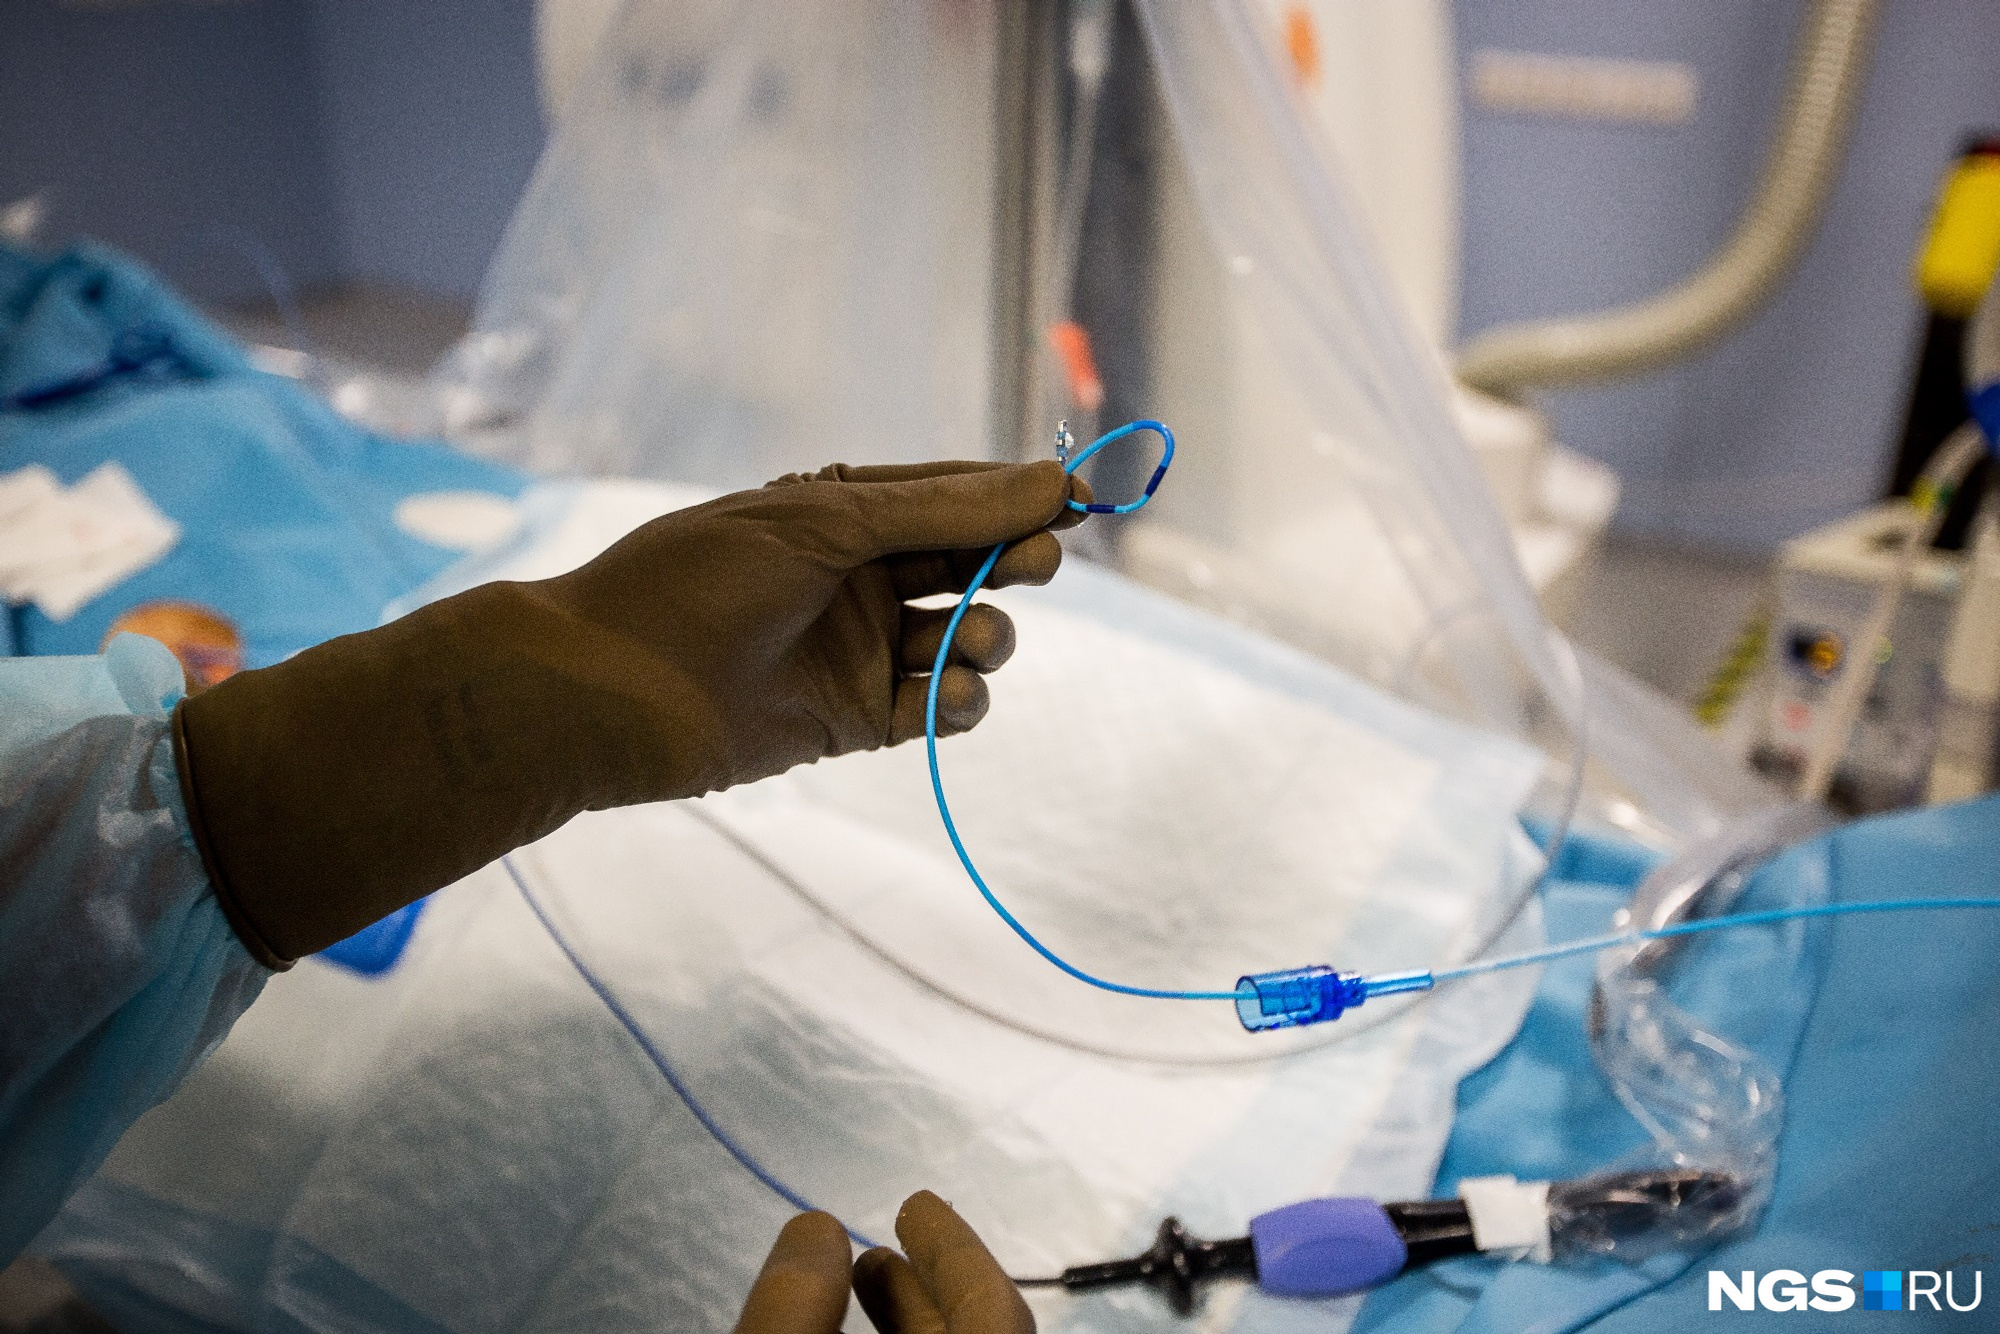 Катетер вставляют в вену пациента — так врачи «добираются» до сердца